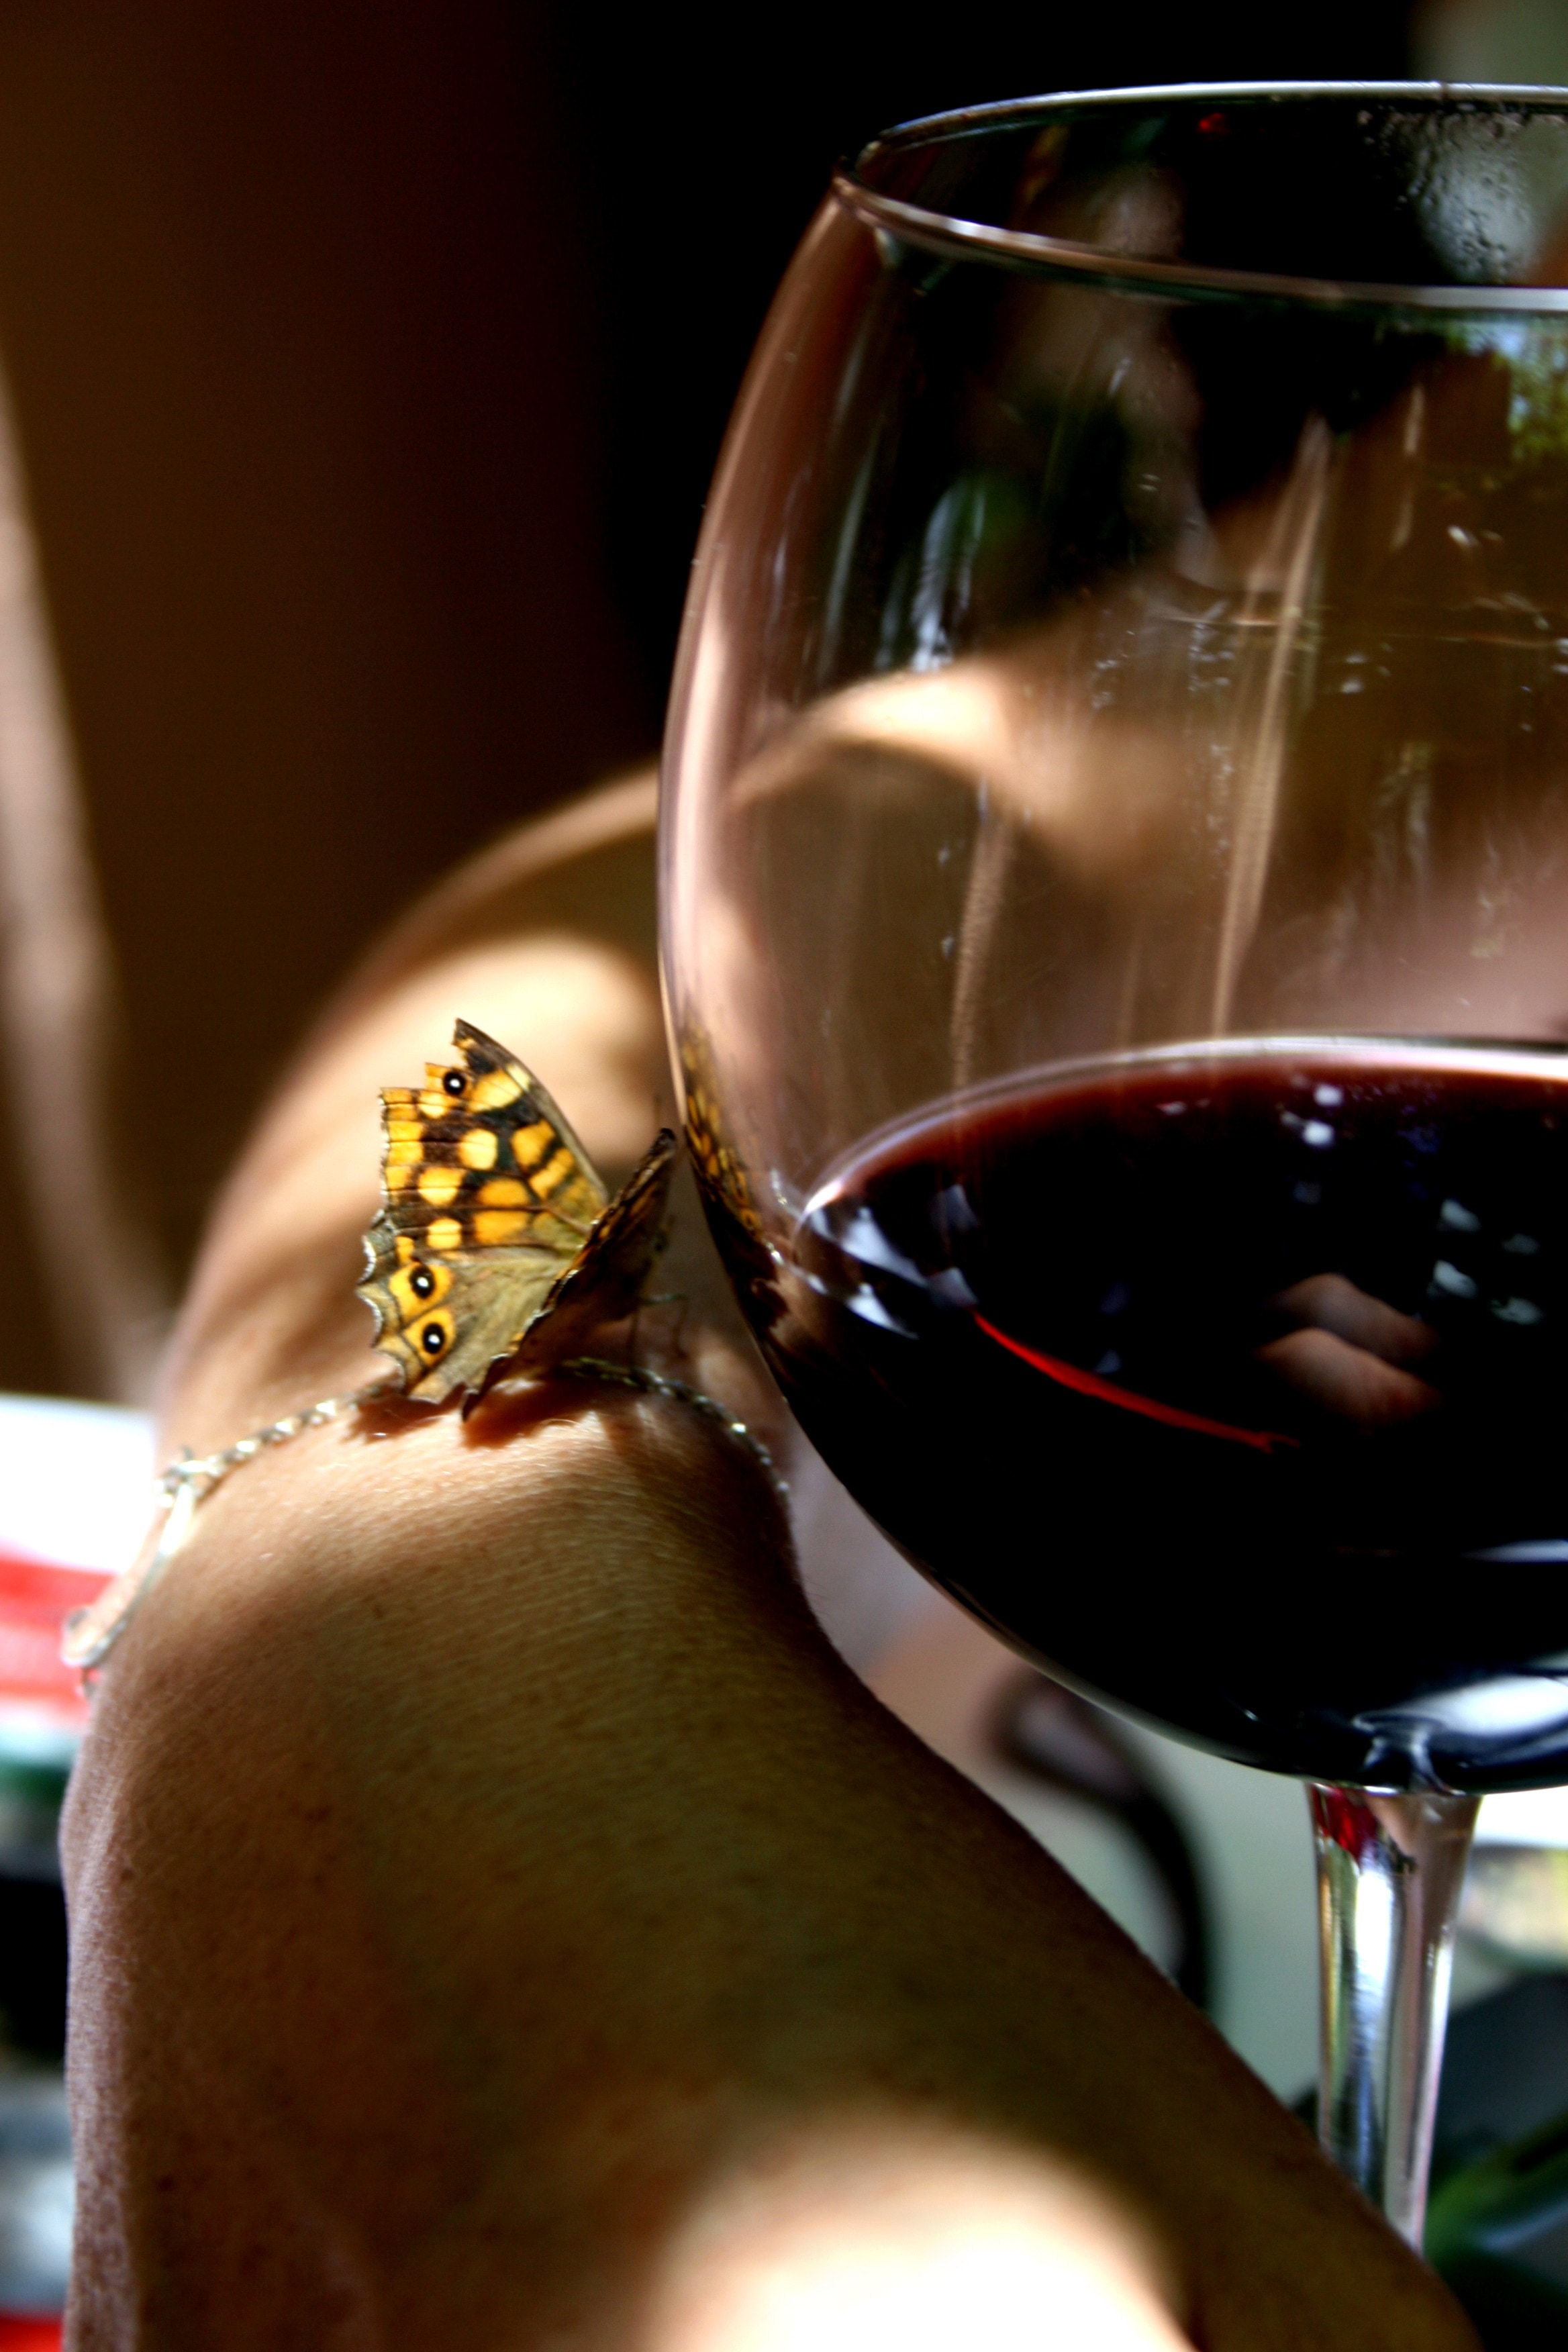 Butterfly, Wine, Glass, wineglass, wine